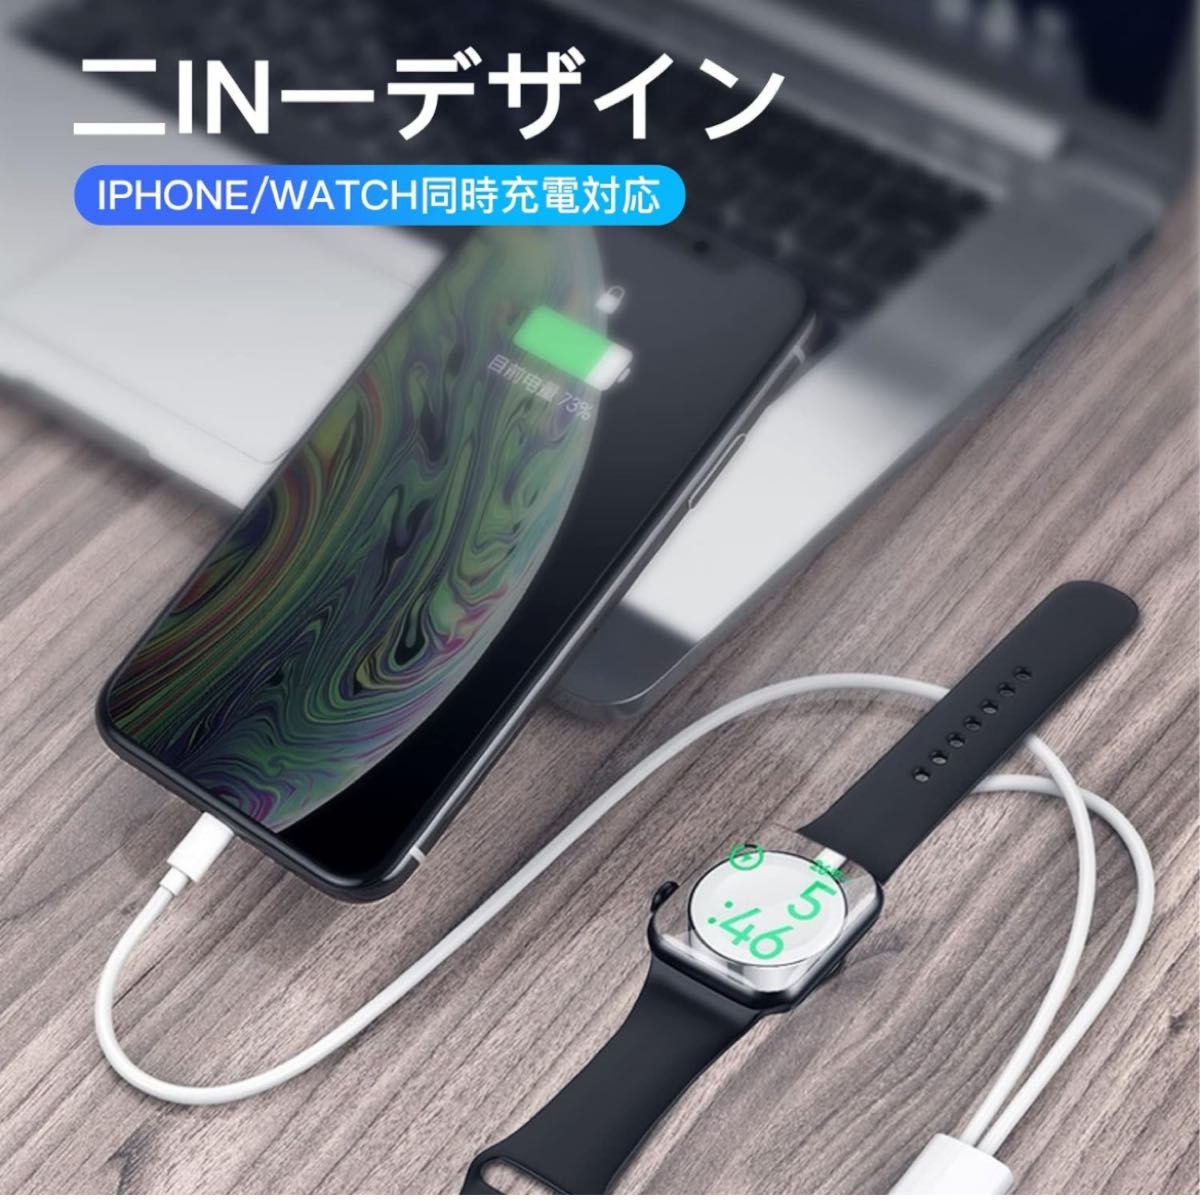 2in1 Apple watch アップルウォッチ充電器 アップルウォッチ マグネット式充電ケーブル ワイヤレス 持ち運び便利